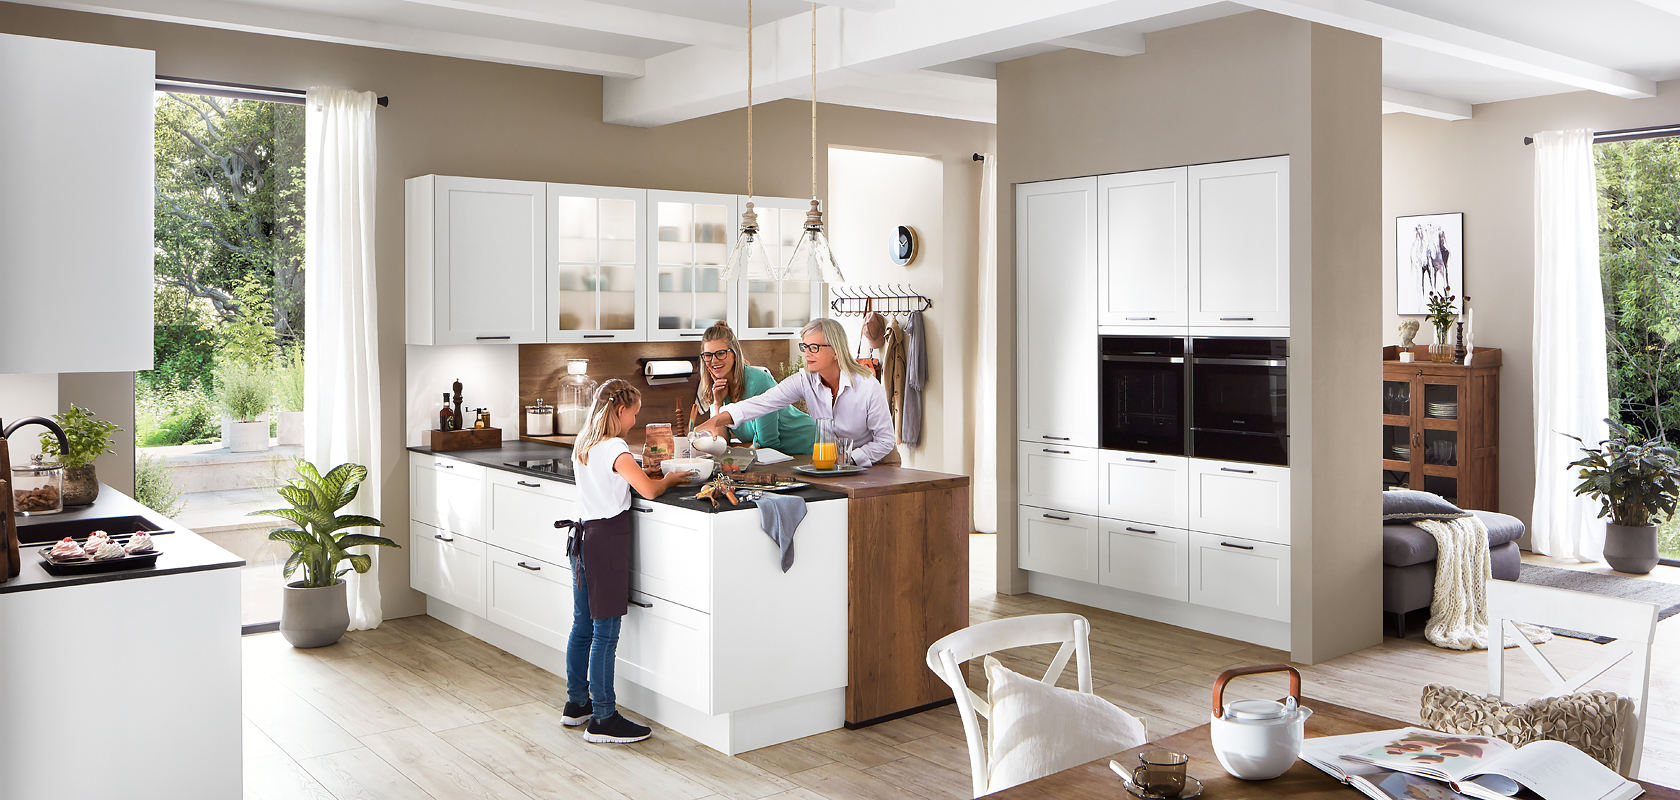 Nowoczesna kuchnia wypełniona naturalnym światłem, w której rodzina spędza czas razem, prezentująca eleganckie białe szafki kuchenne i stalowe urządzenia.